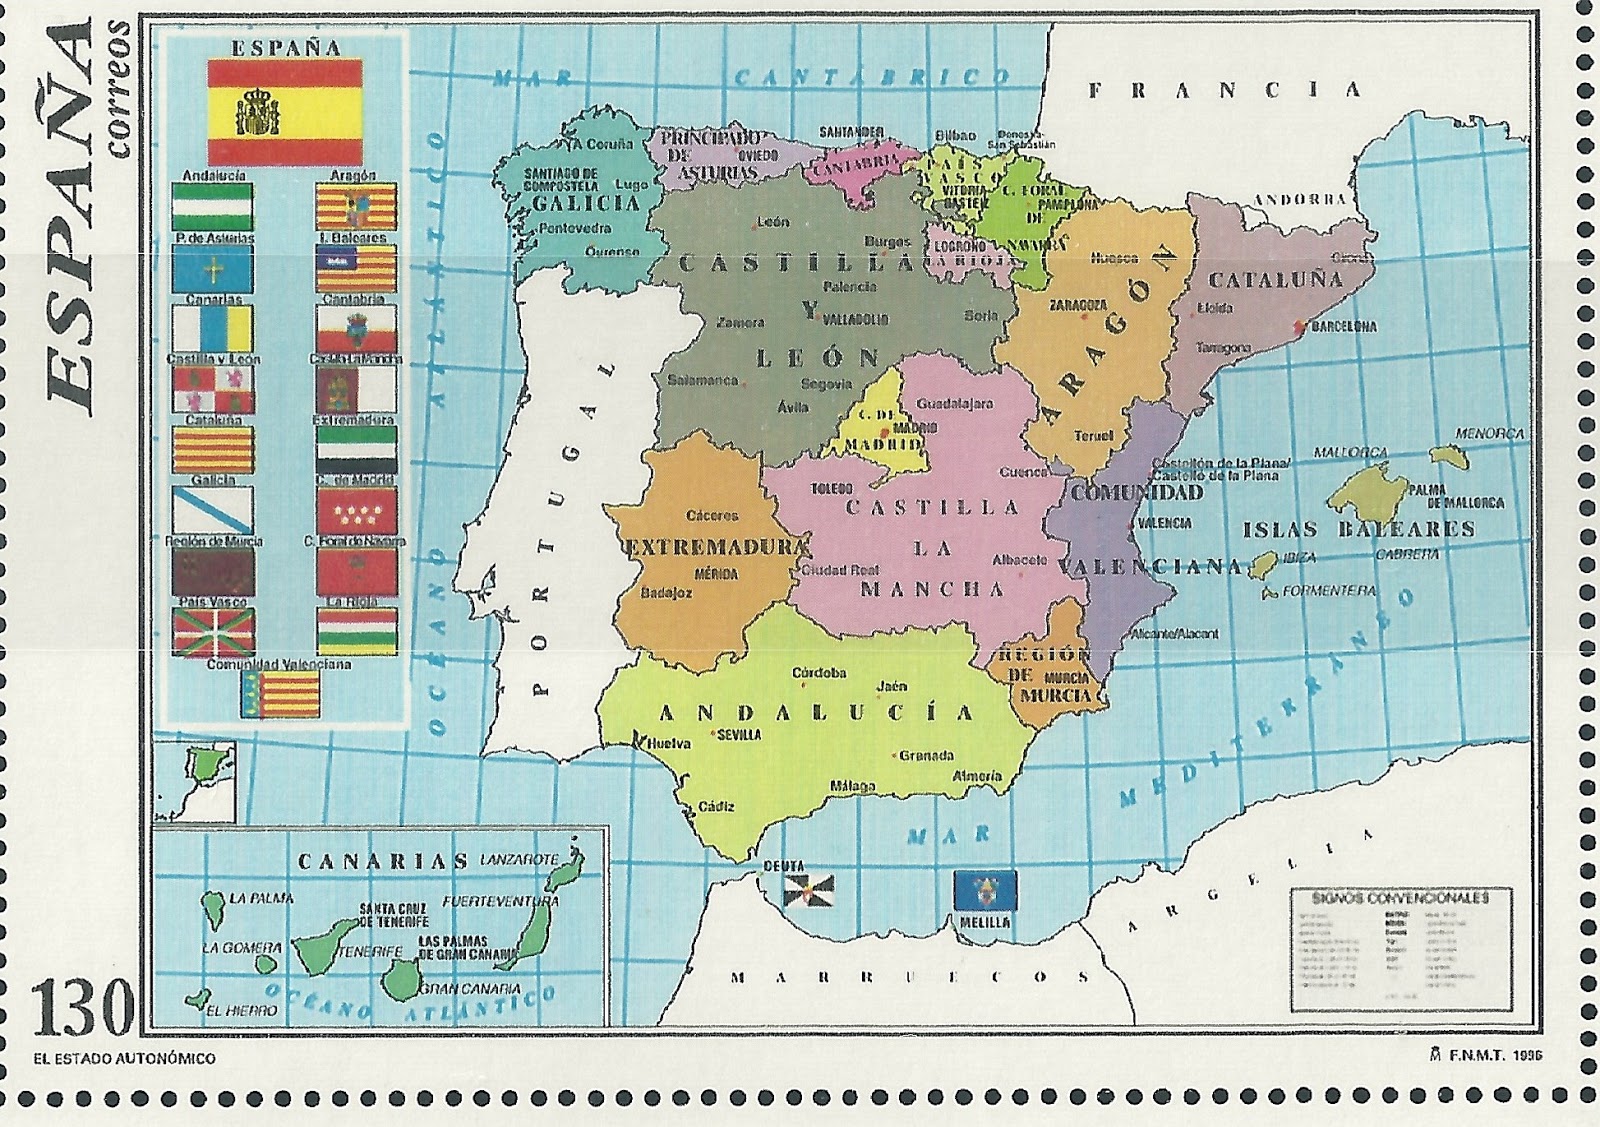 Spainfilatelia: MAPA OFICIAL DEL ESTADO AUTONÓMICO